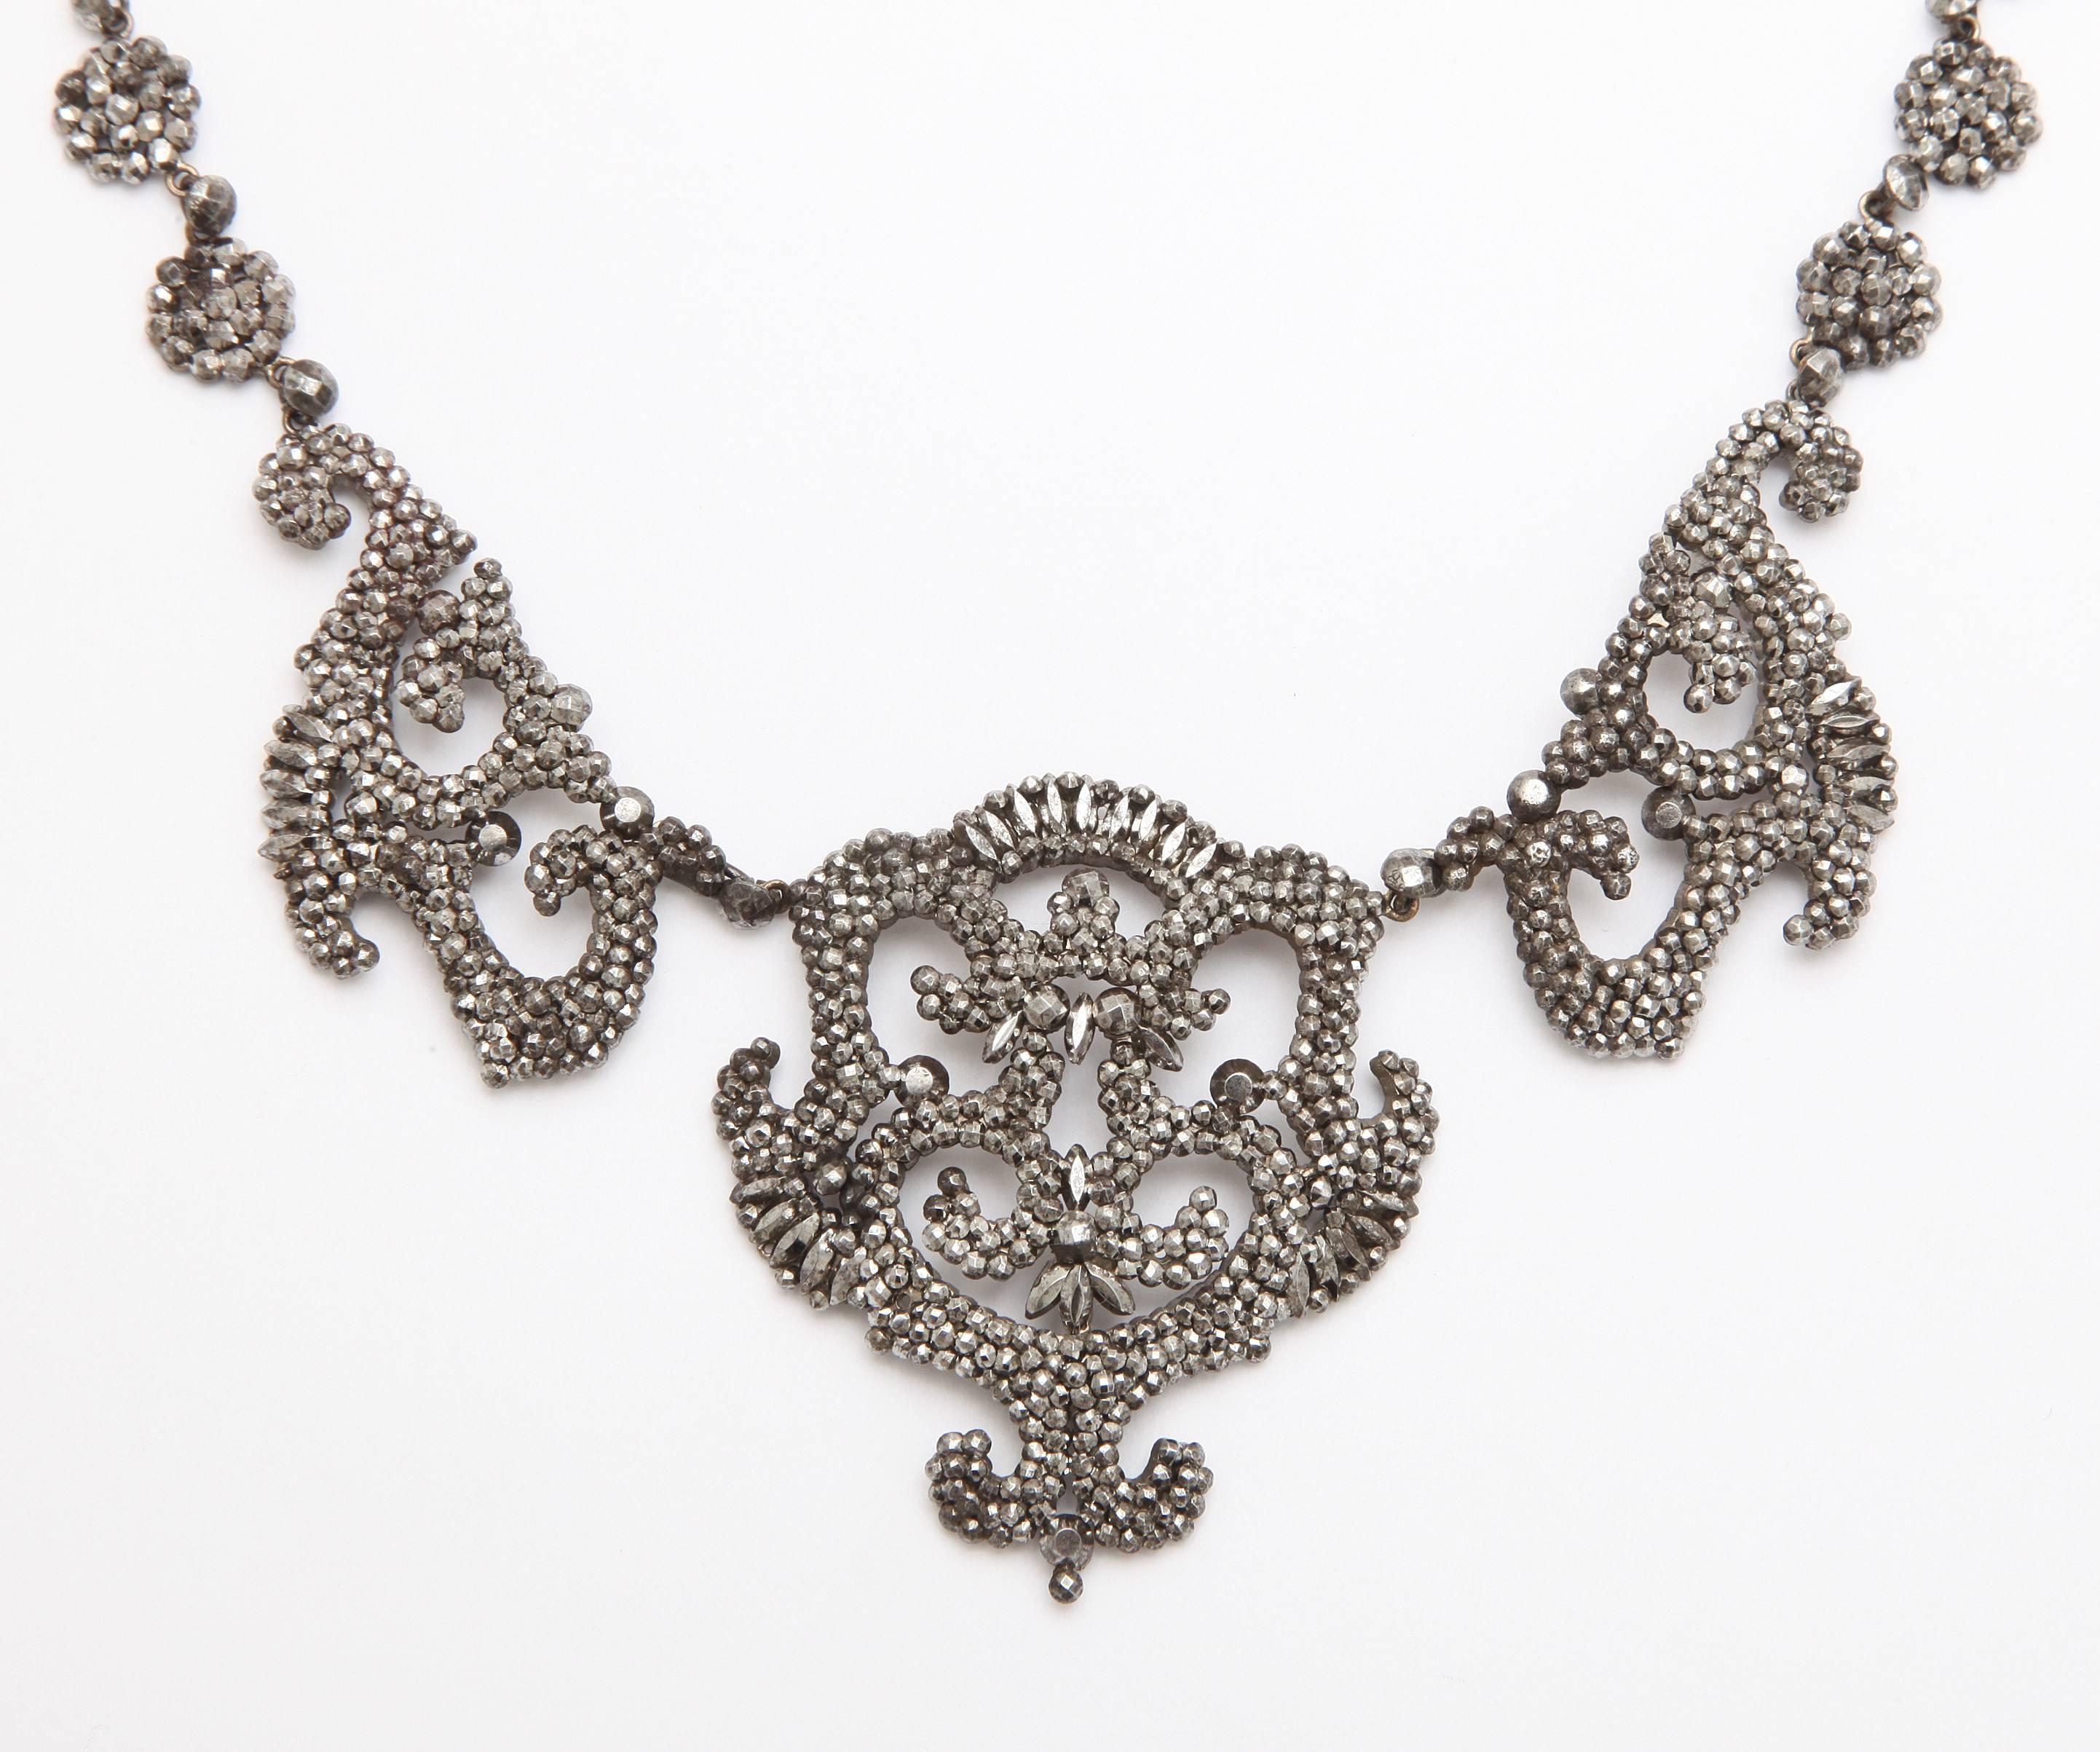 Als Krönung des Designs schimmert diese Halskette aus geschliffenem Stahl im vorhandenen Licht wie Diamanten, so wie es ursprünglich in den frühen 1800er Jahren der Fall war. Passt zu eleganten Anlässen oder Jeanshemden und Bluejeans, indem es mit